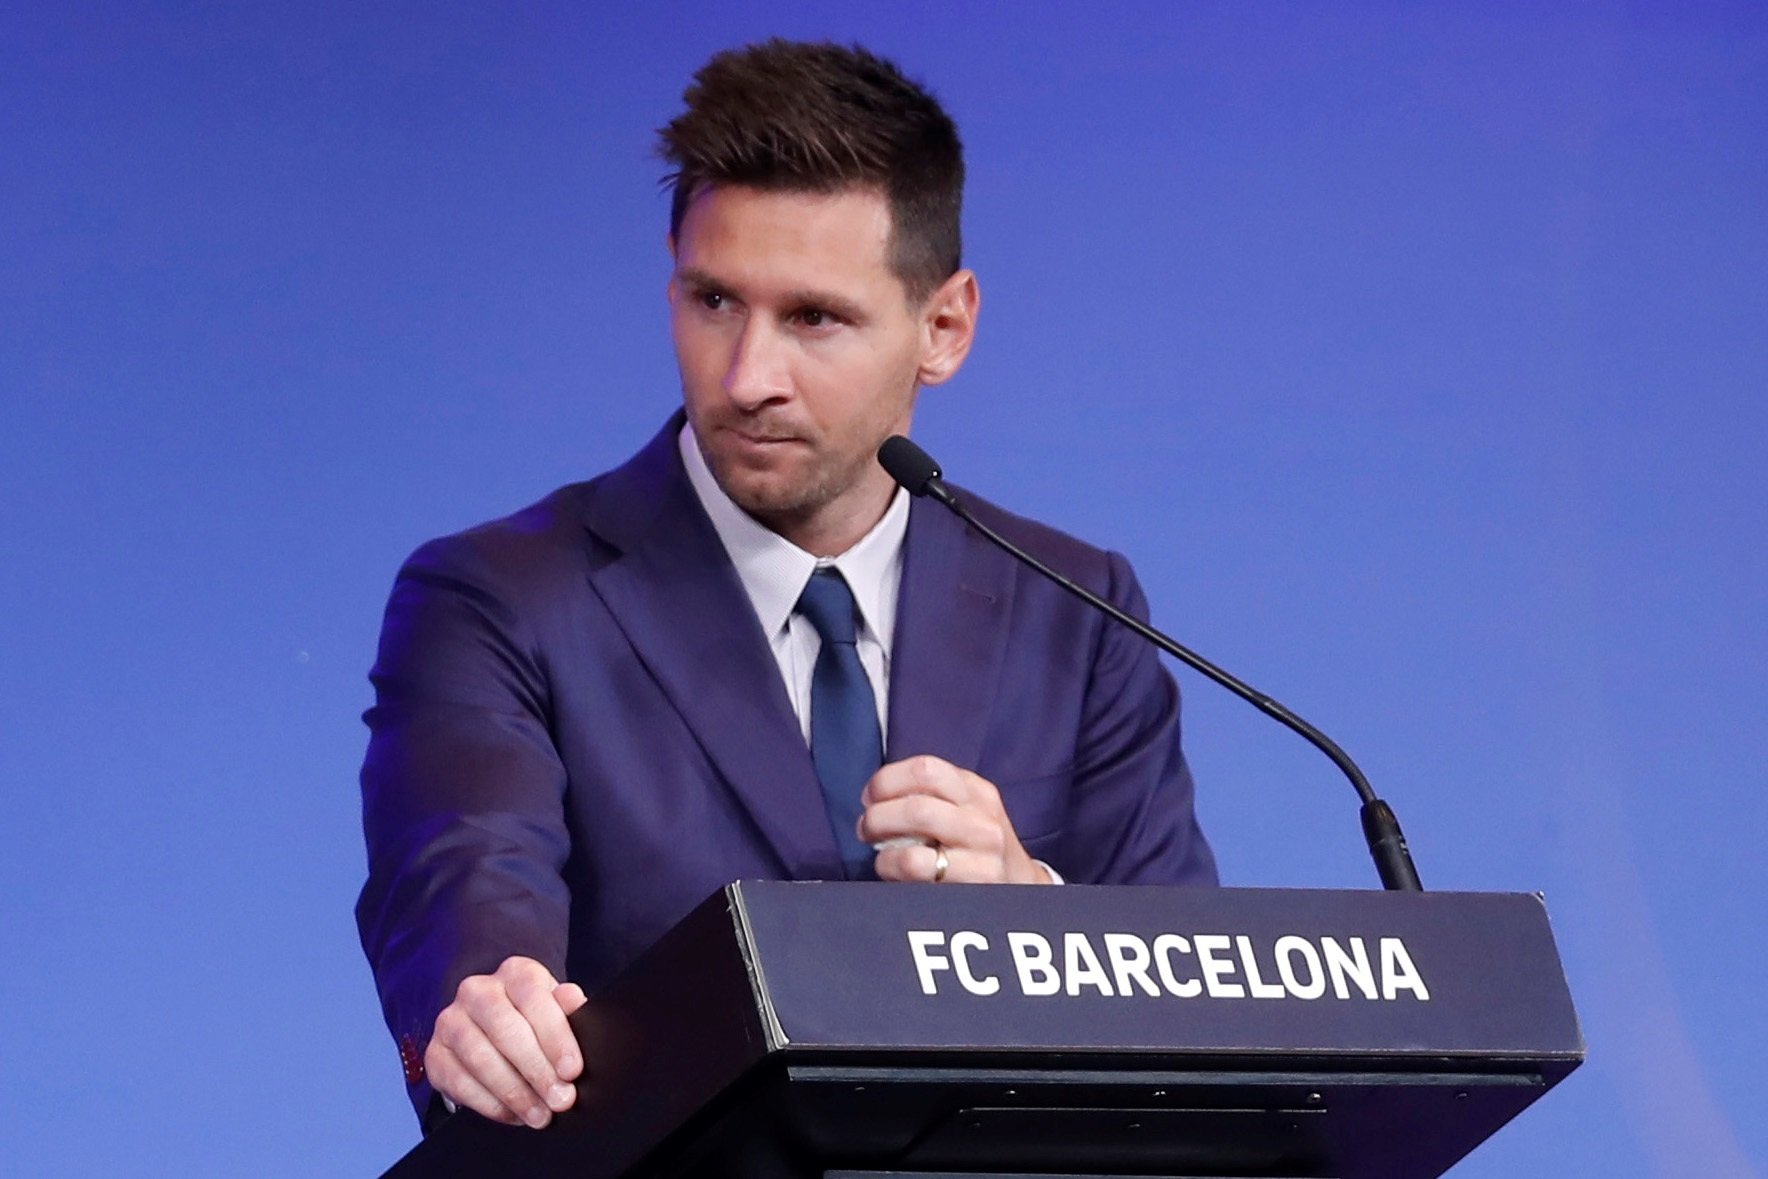 Messi, emocionado, dice adiós al Barça y mira al futuro: "Volveremos"